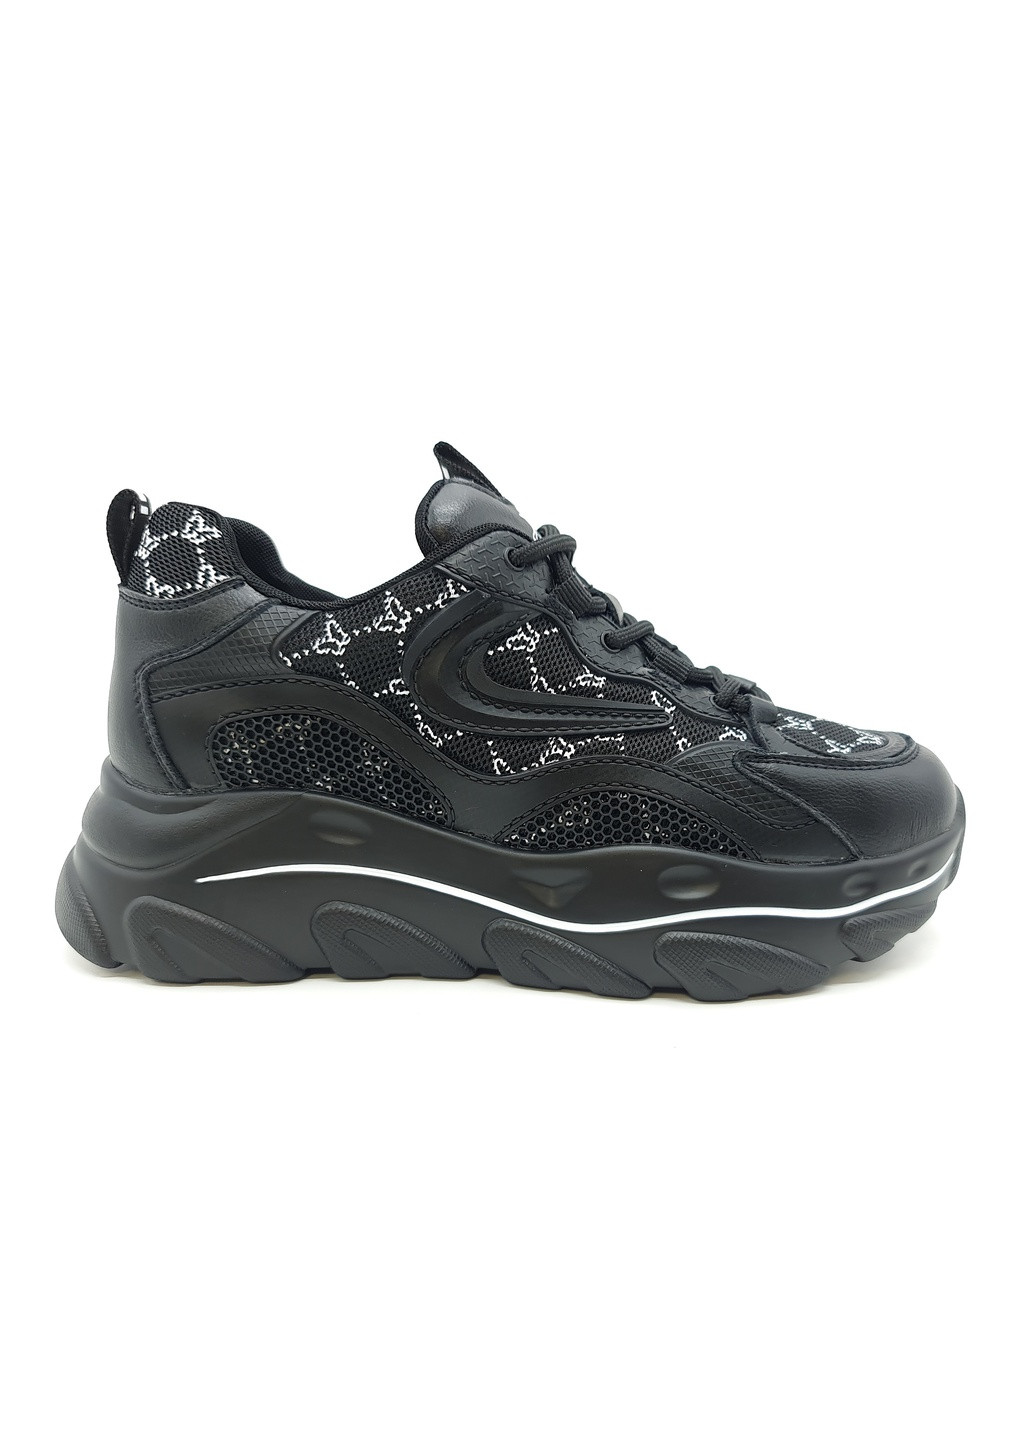 Черные всесезонные женские кроссовки черные кожаные l-10-4 23,5 см (р) Lonza